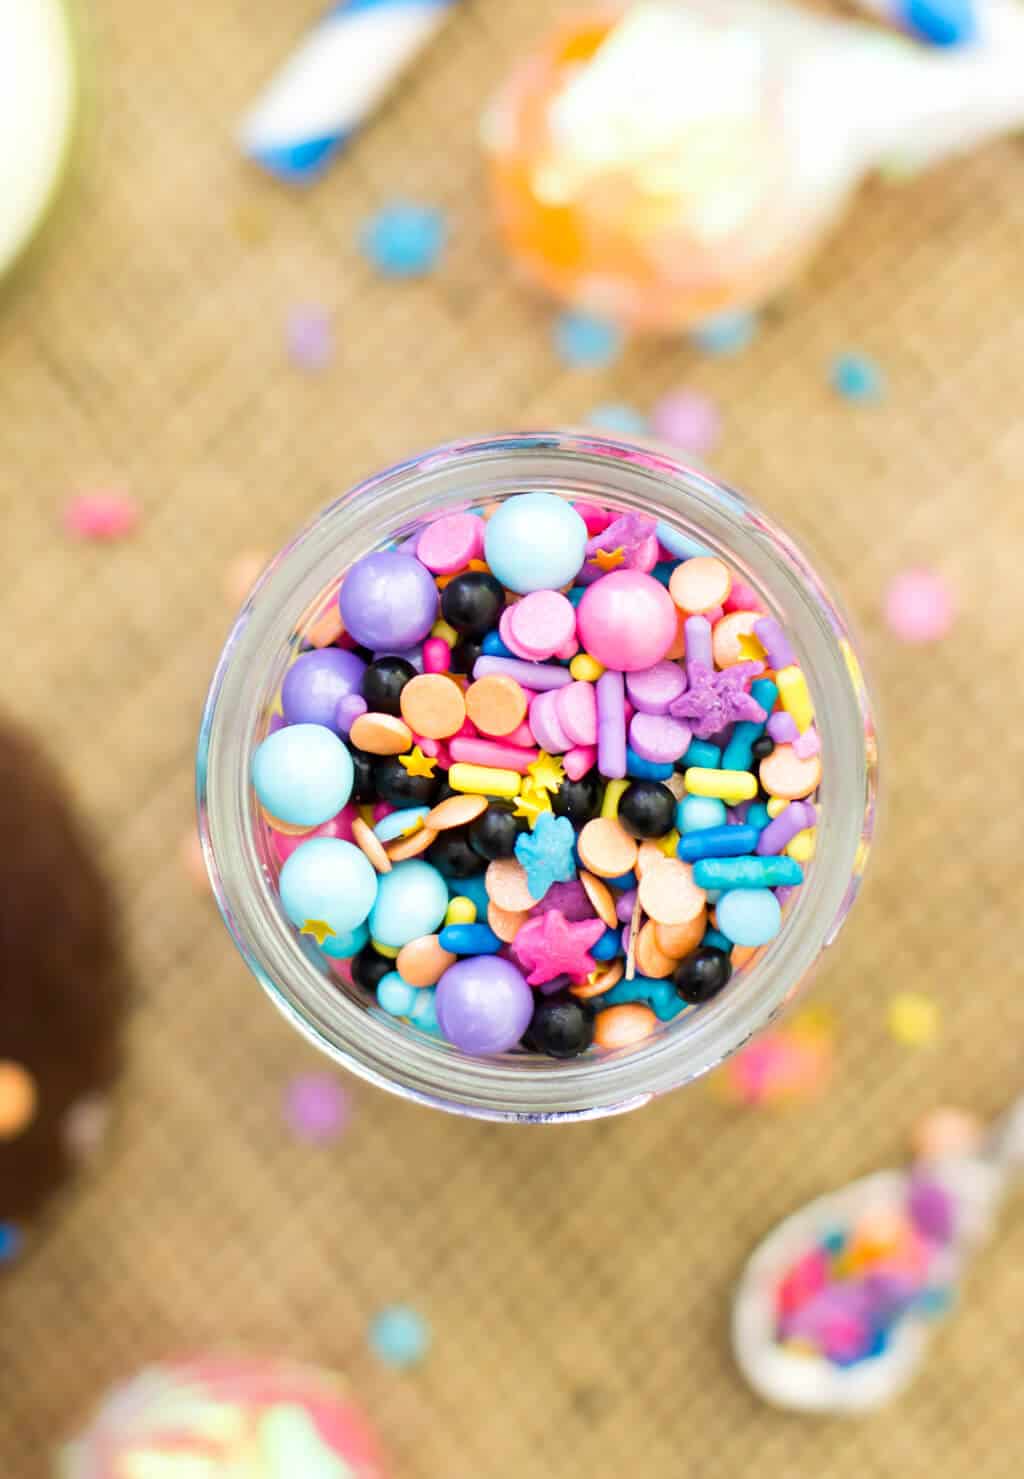 A jar of colorful sprinkles